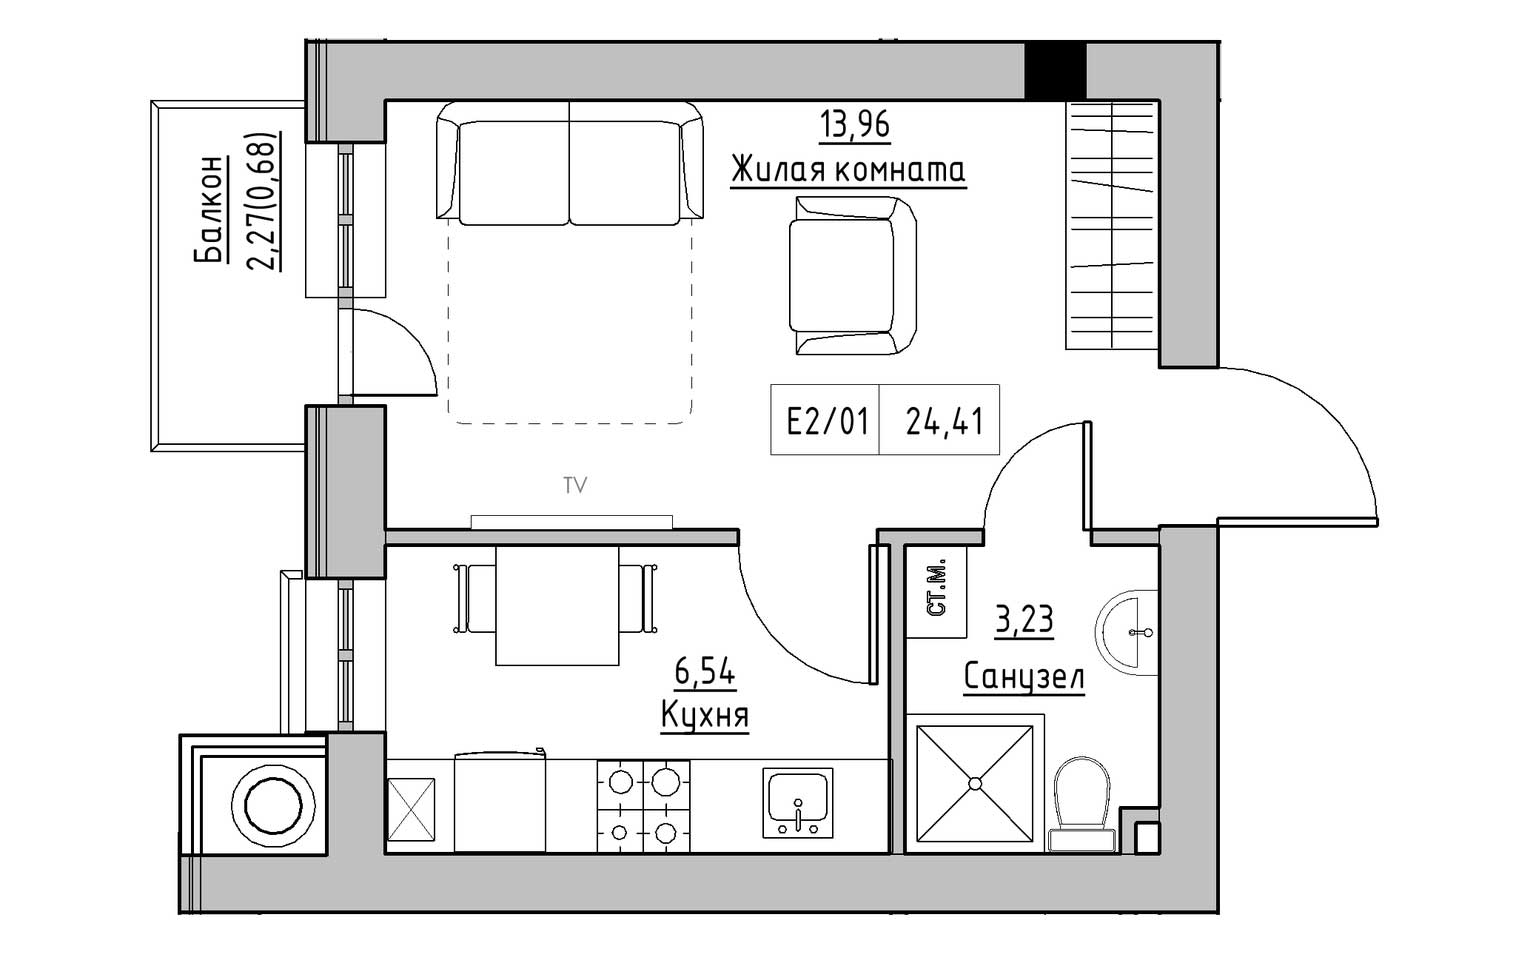 Планировка 1-к квартира площей 24.41м2, KS-009-03/0005.